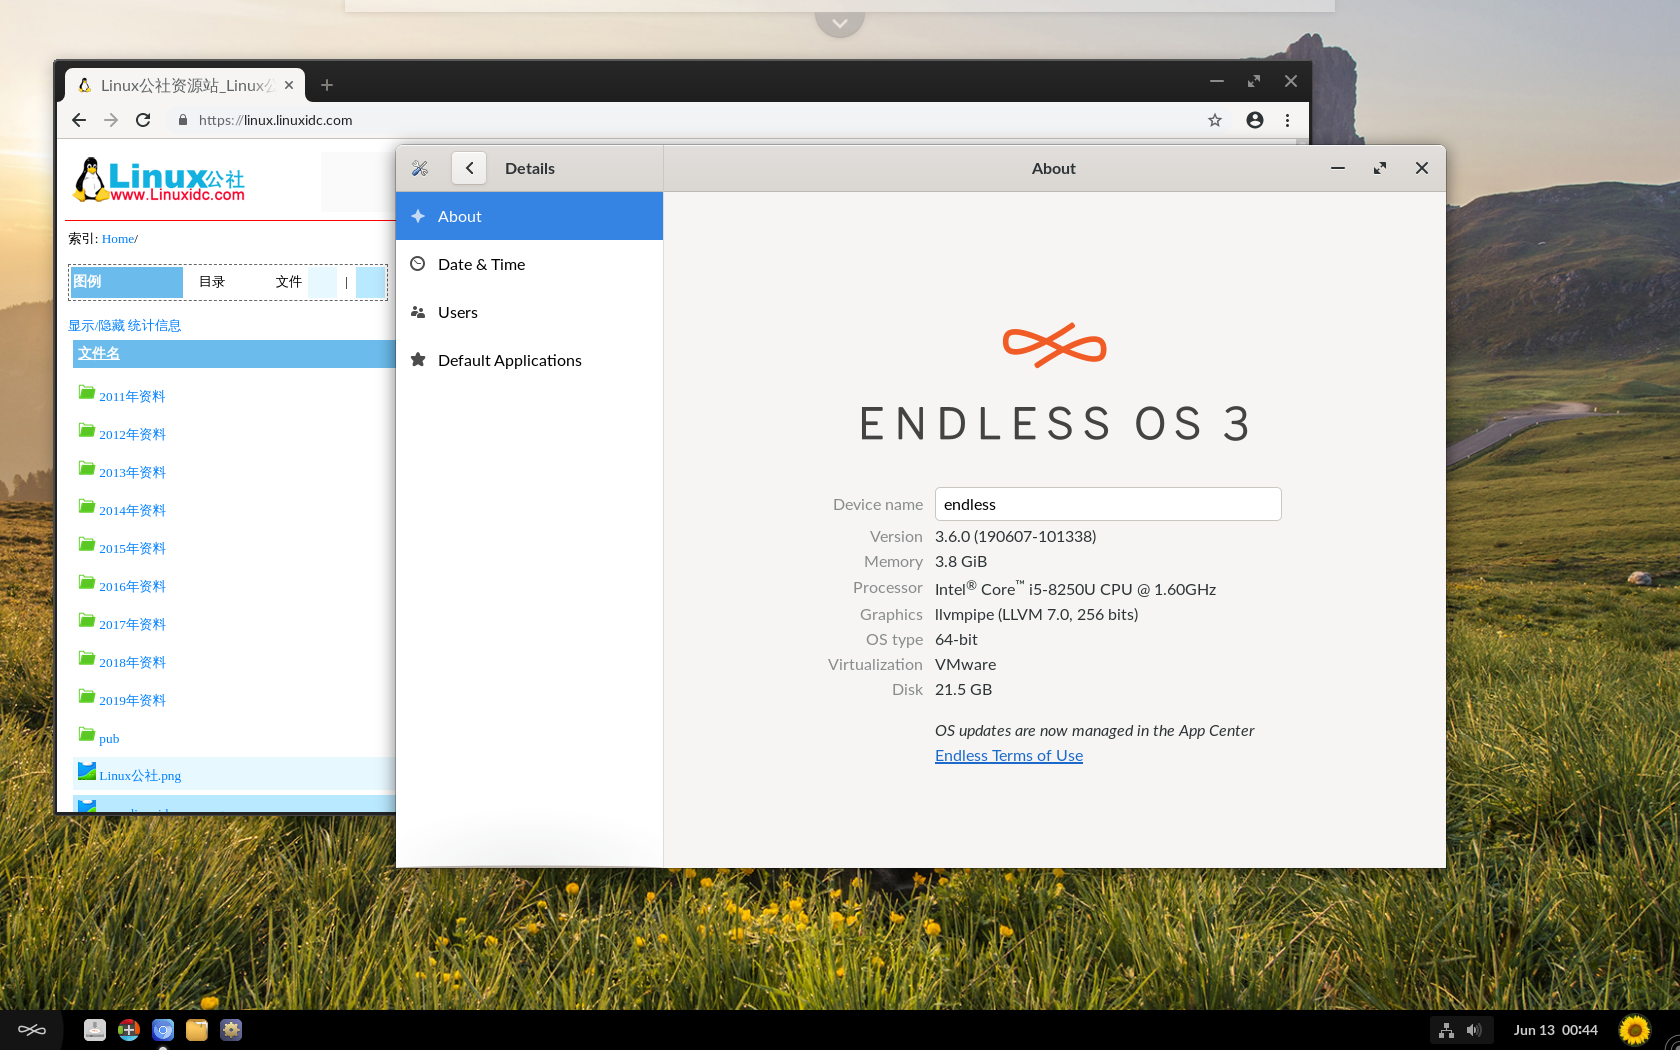 基于Debian的发行版Endless OS 3.6.0 发布基于Debian的发行版Endless OS 3.6.0 发布